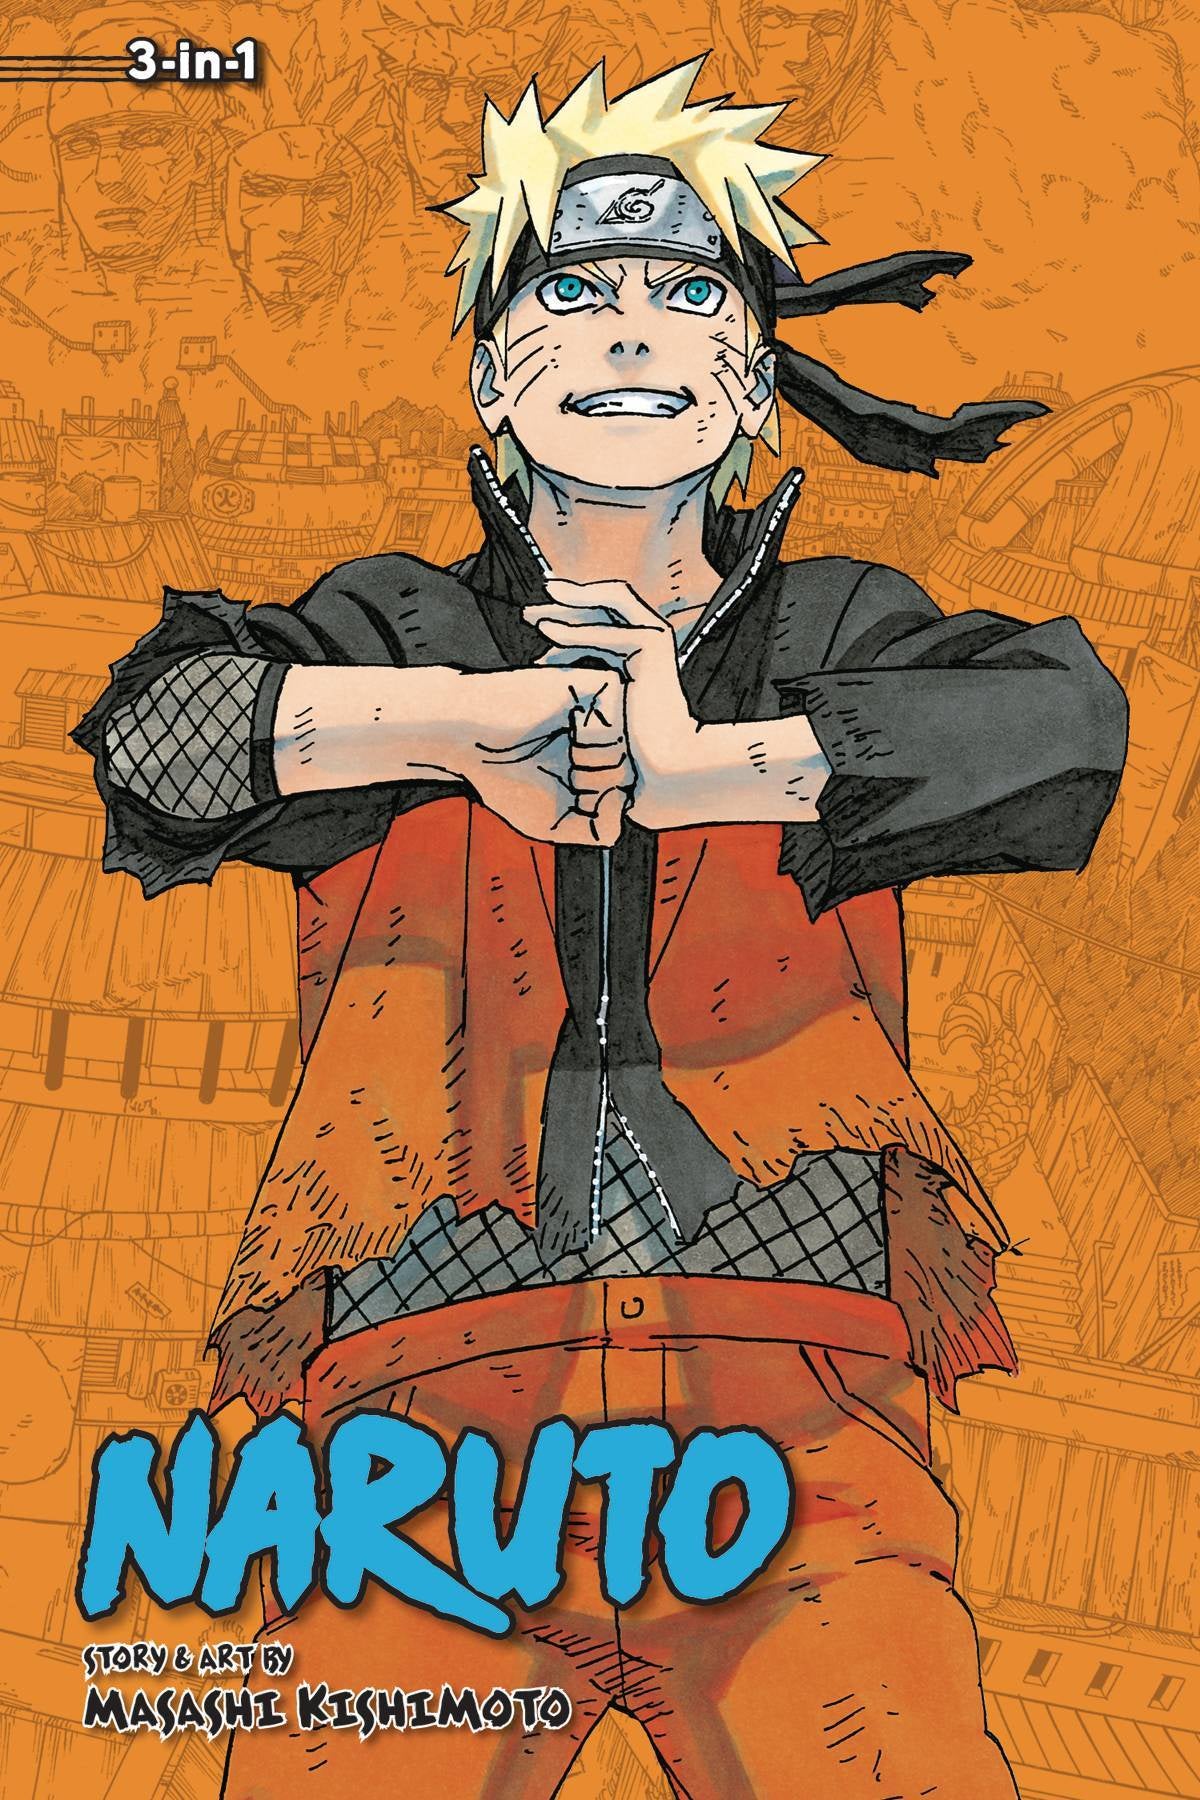 NARUTO VOLUME 22 (3 in 1 EDITION)